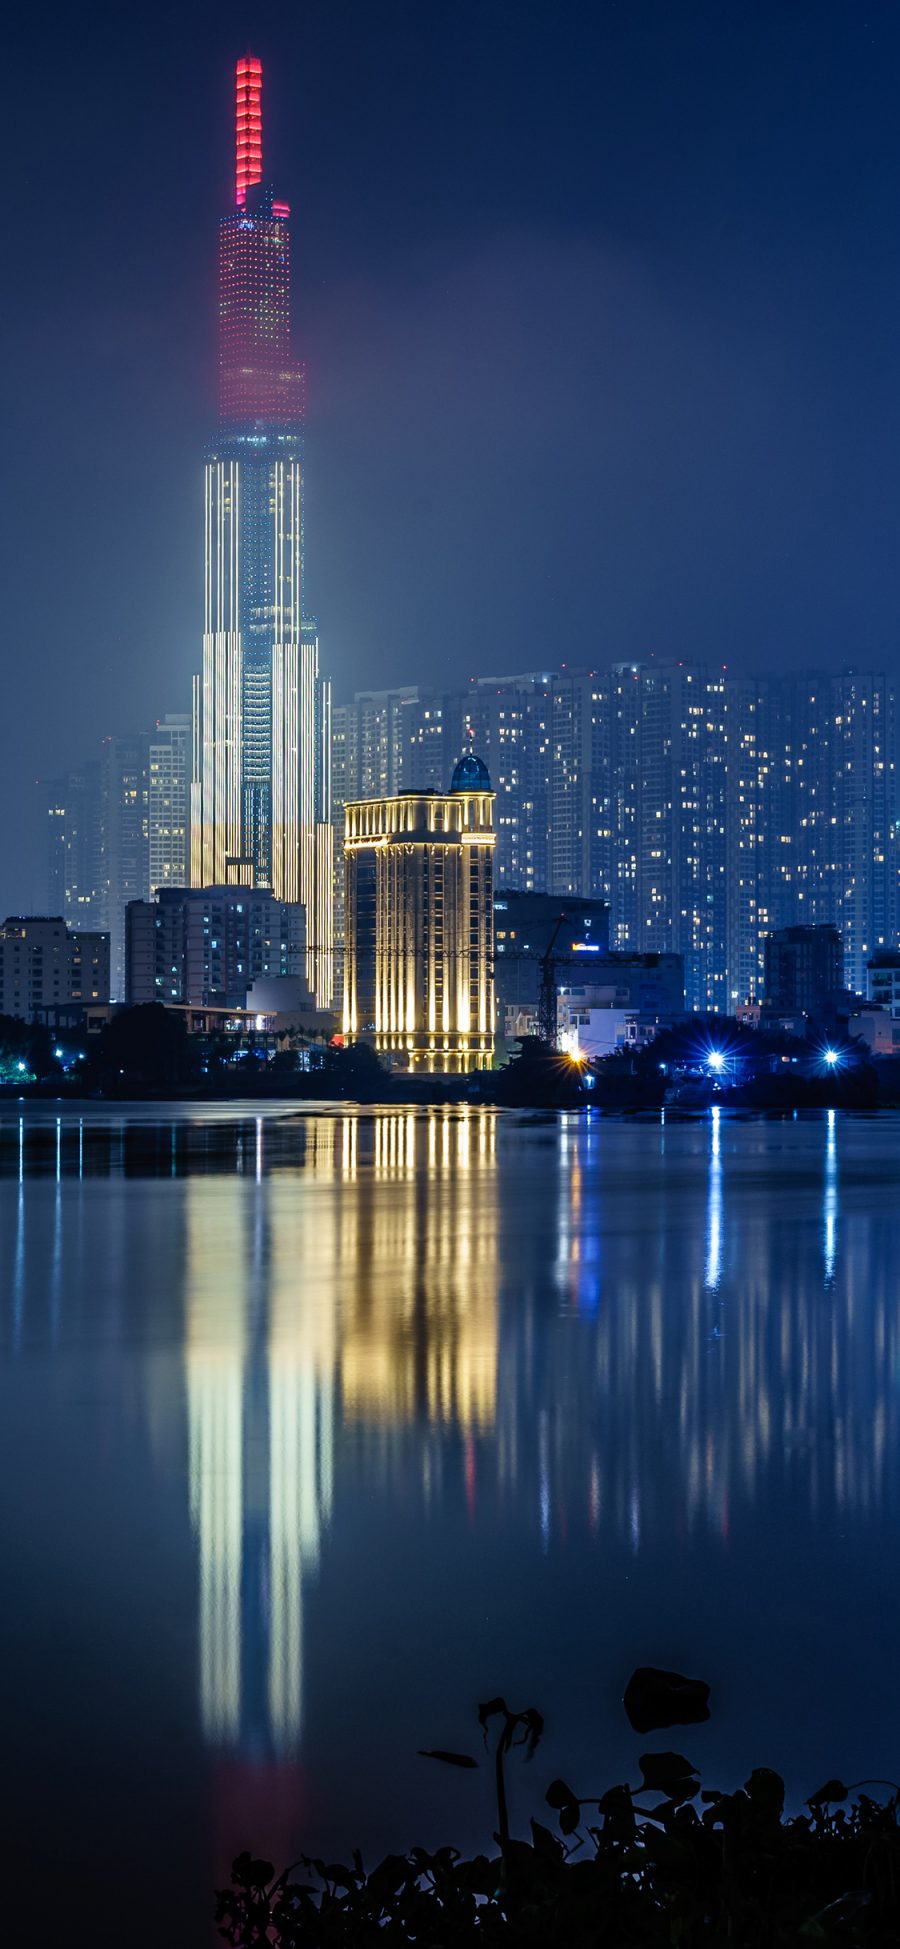 [2436×1125]城市 夜景 建筑 倒映 苹果手机壁纸图片